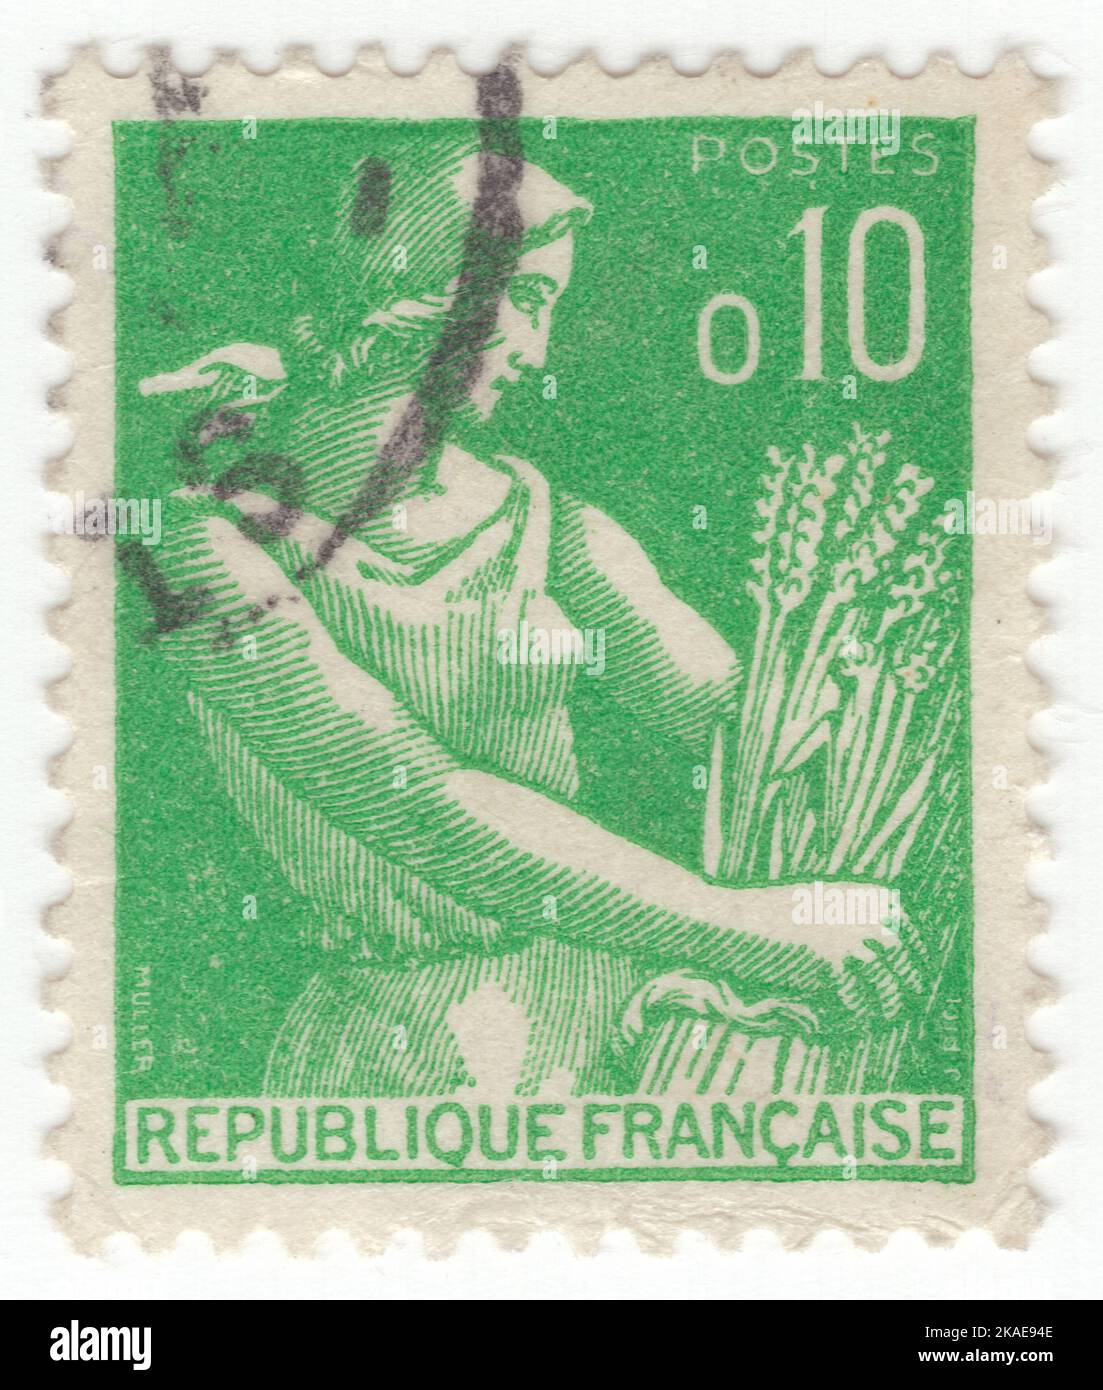 FRANKREICH - 1960: Eine 10 Centimes hellgrüne Briefmarke, die Farm Woman: Bauernmädchen in einem leichten Sommerkleid mit einem Schal auf dem Kopf zeigt und Weizen erntet Stockfoto